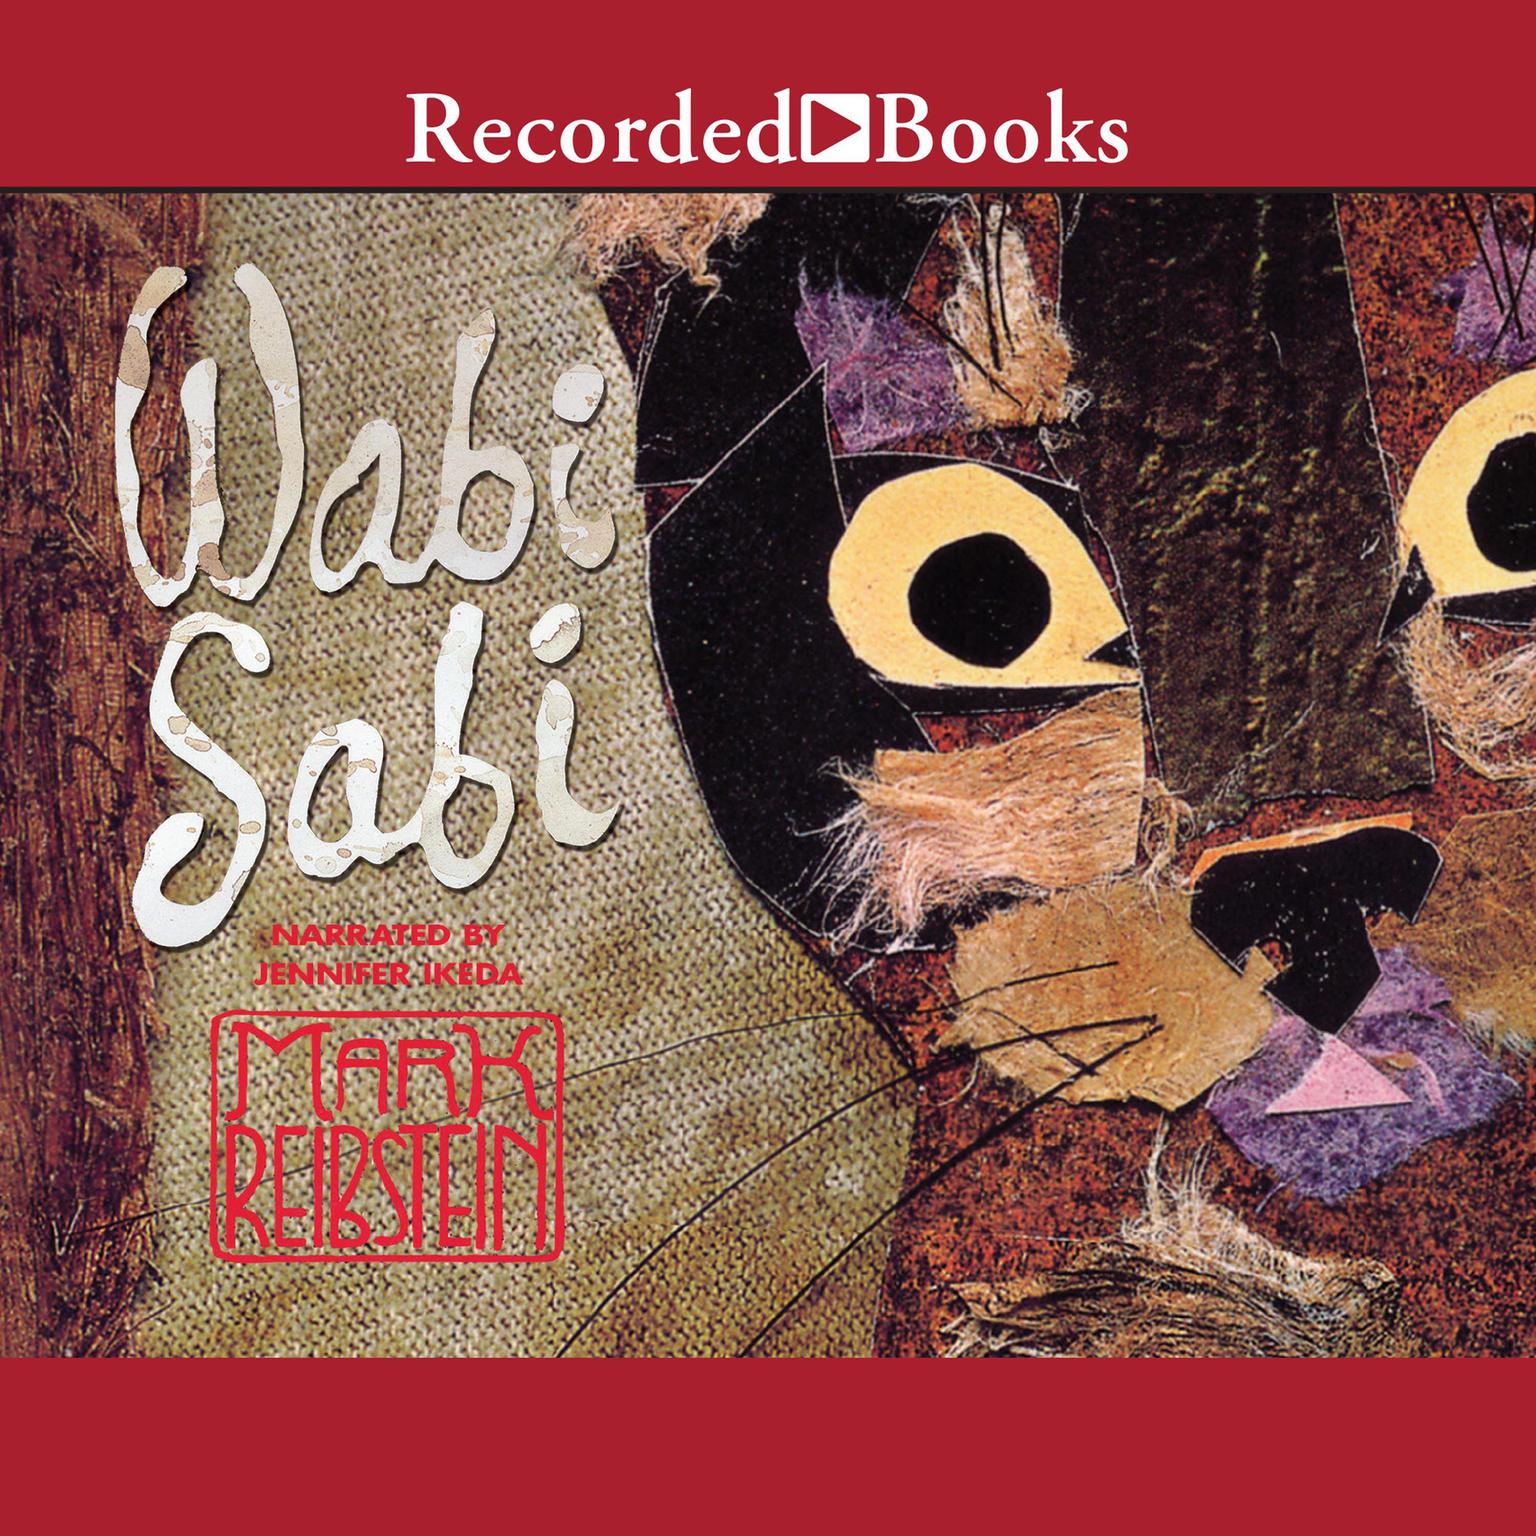 Wabi Sabi Audiobook, by Mark Reibstein